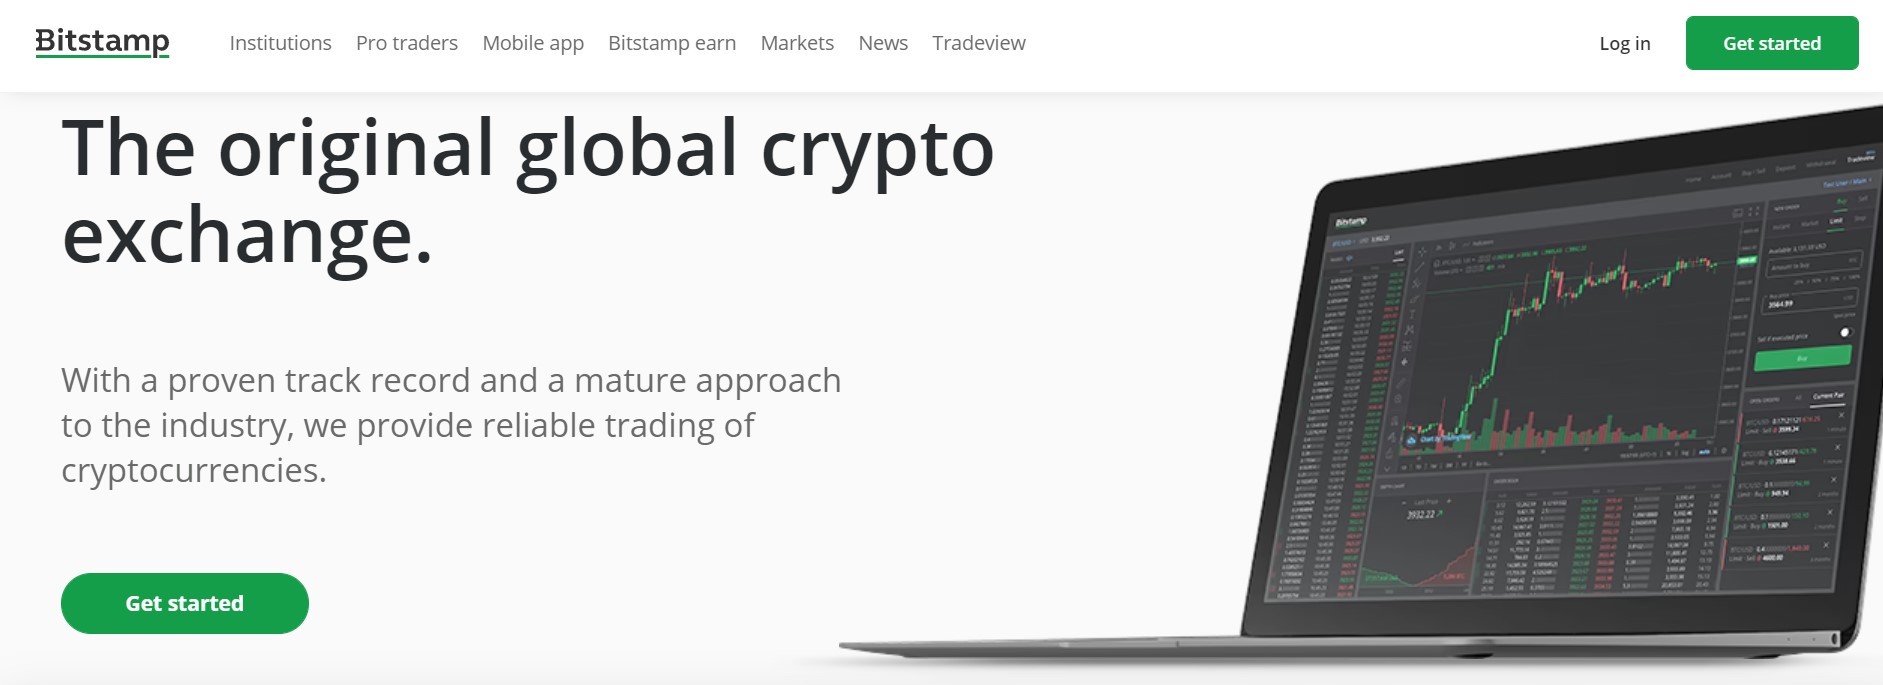 Bitstamp website